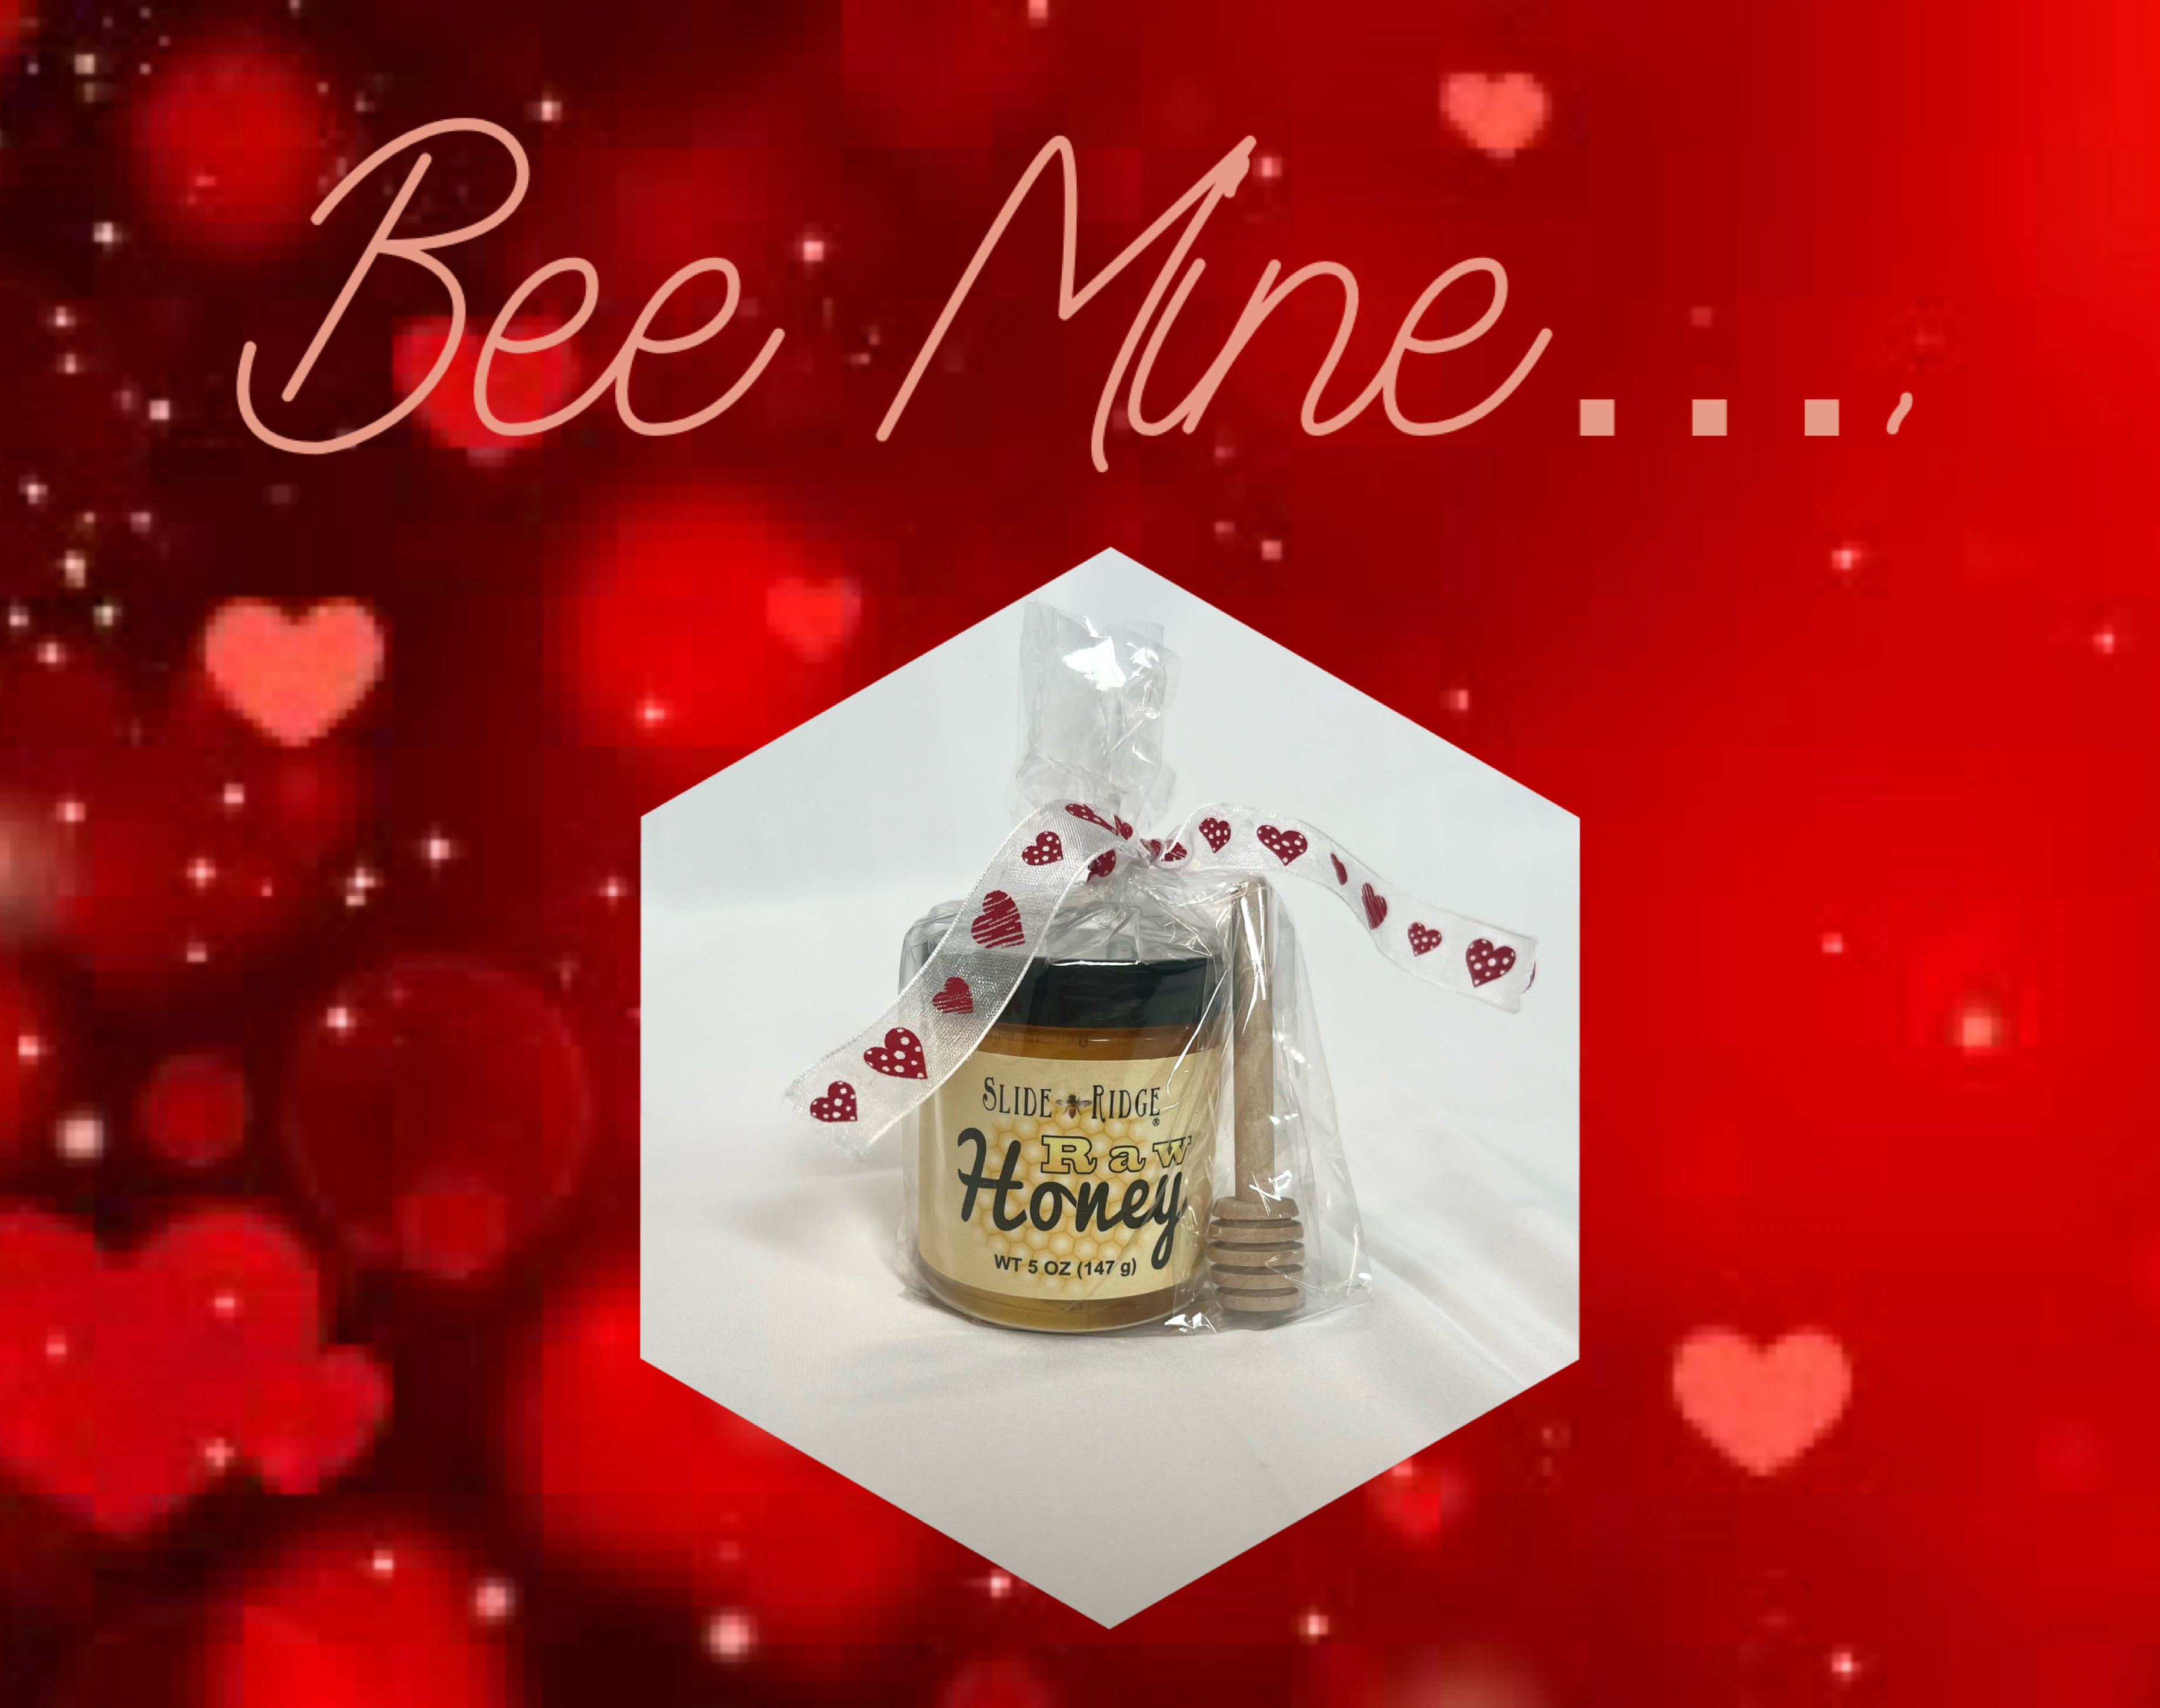 Bee my valentine 🐝